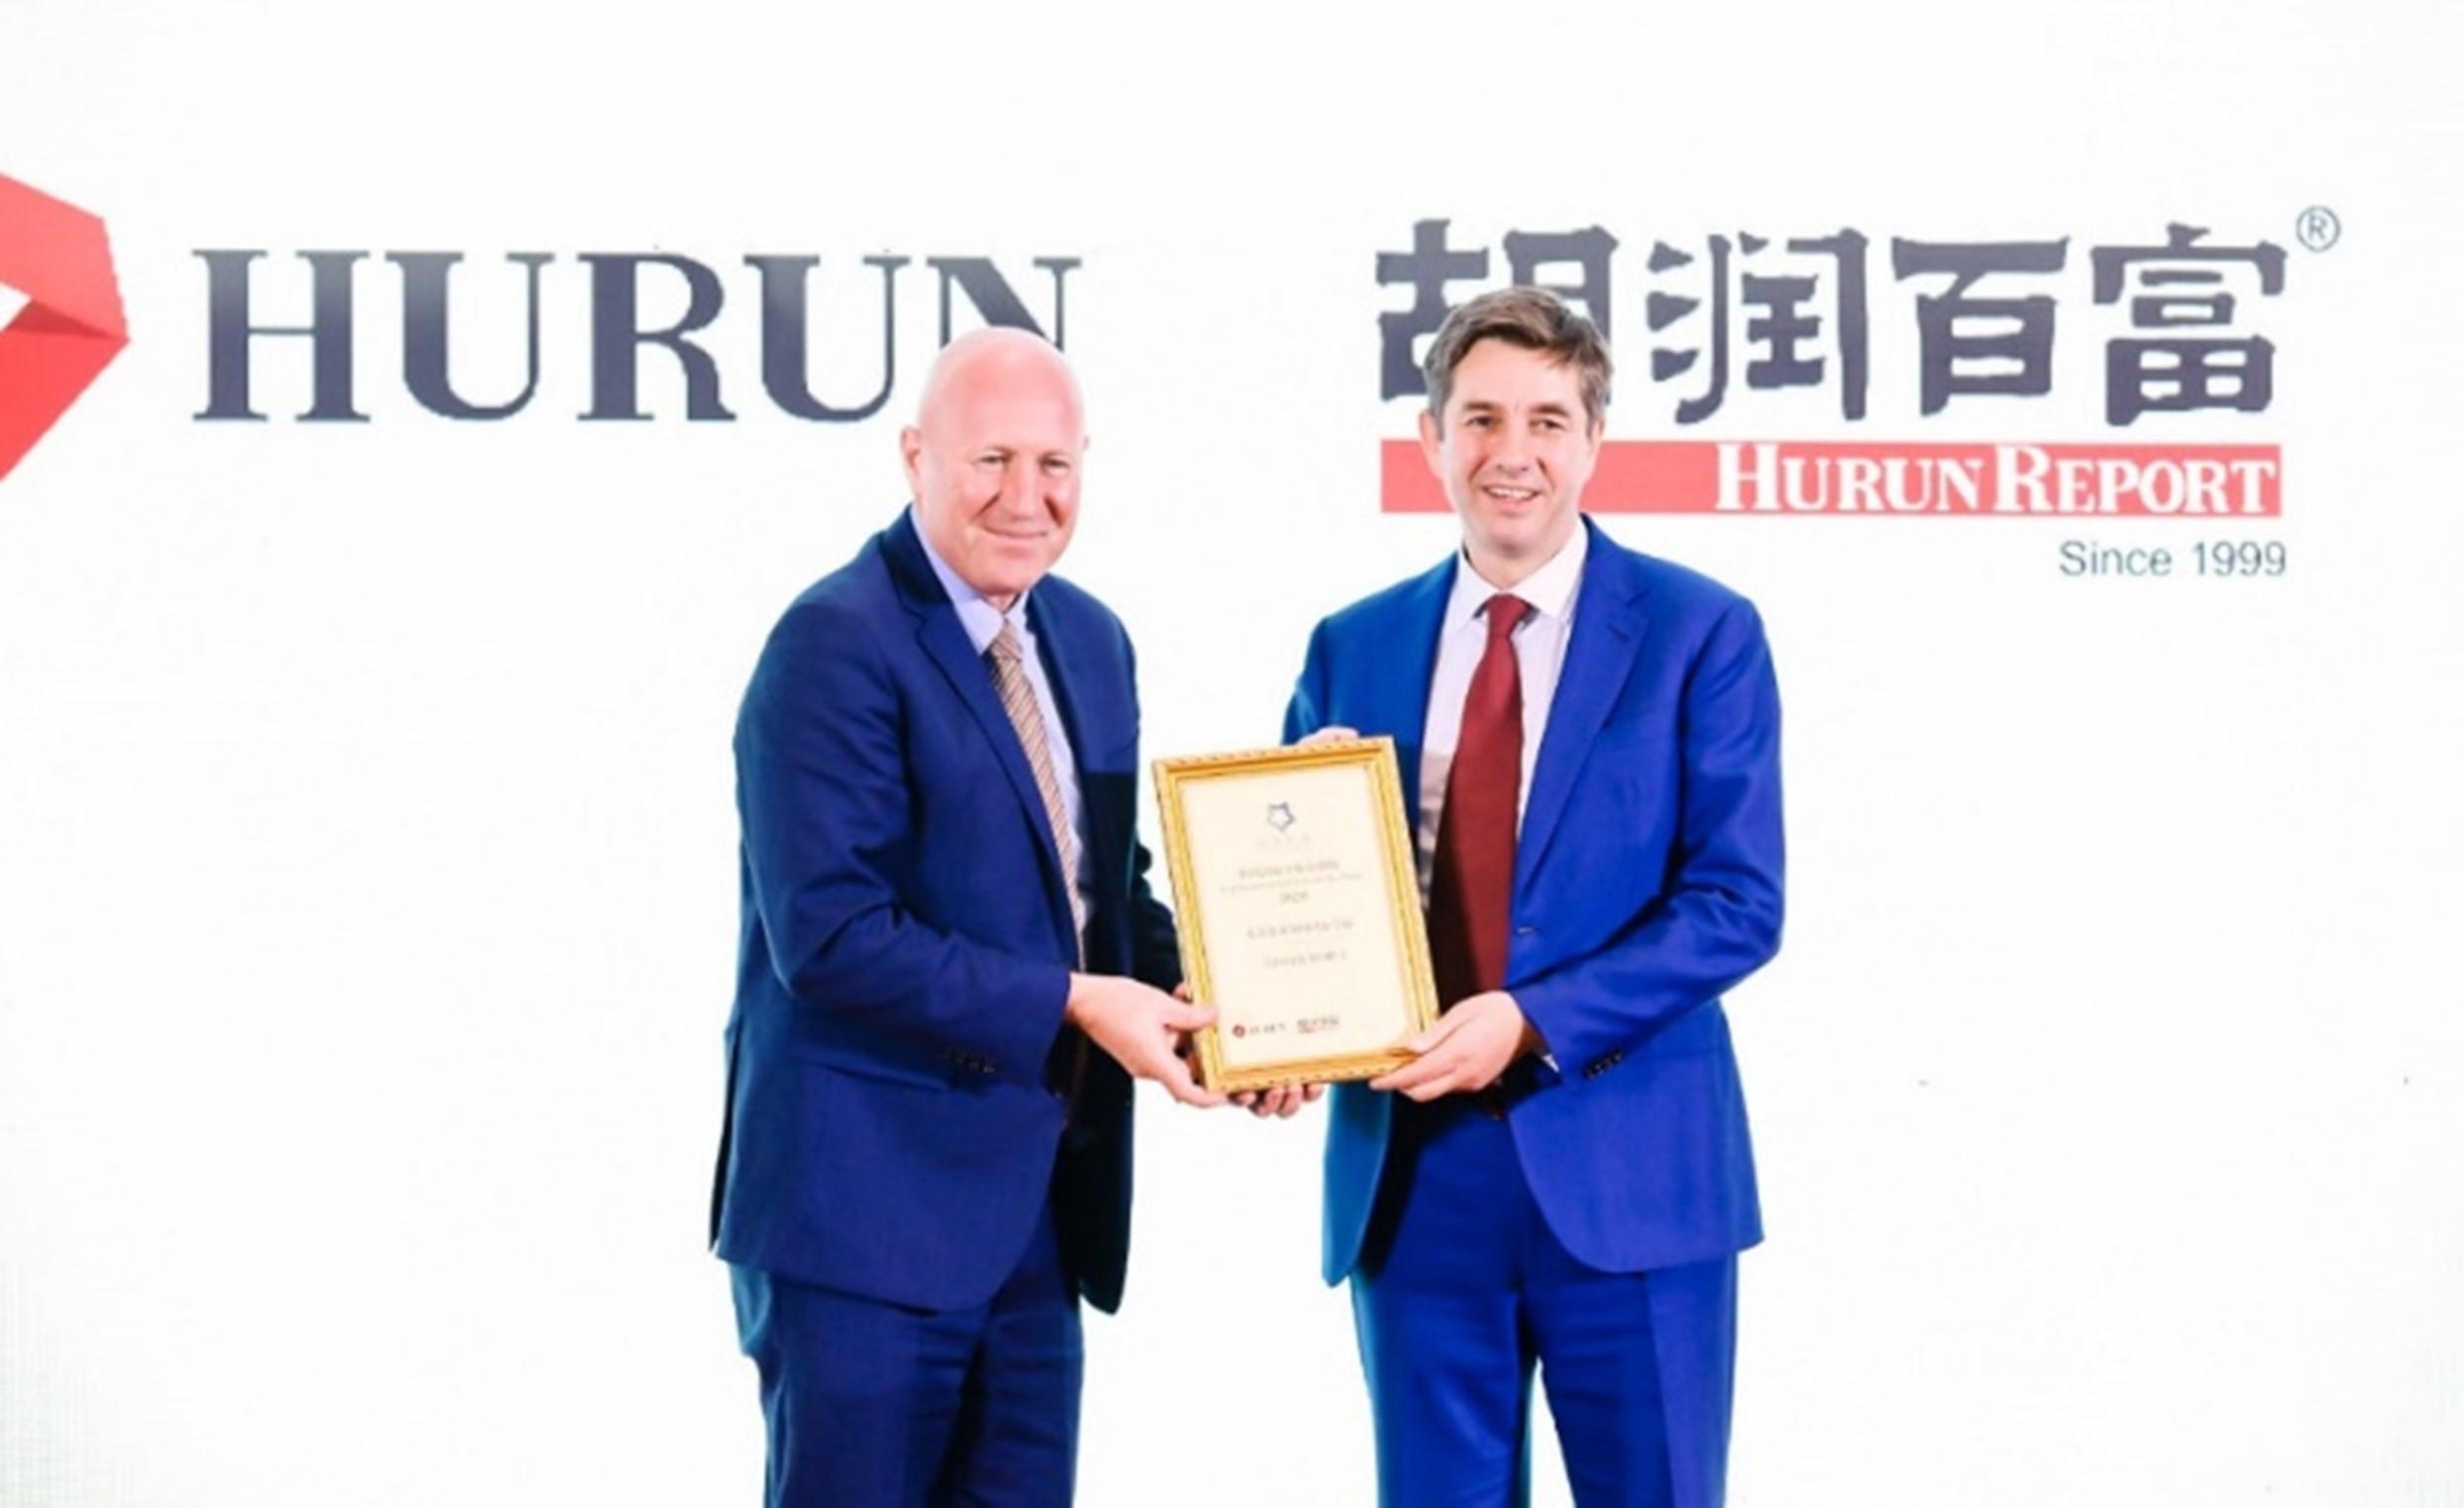 Hurun Award Ceremony